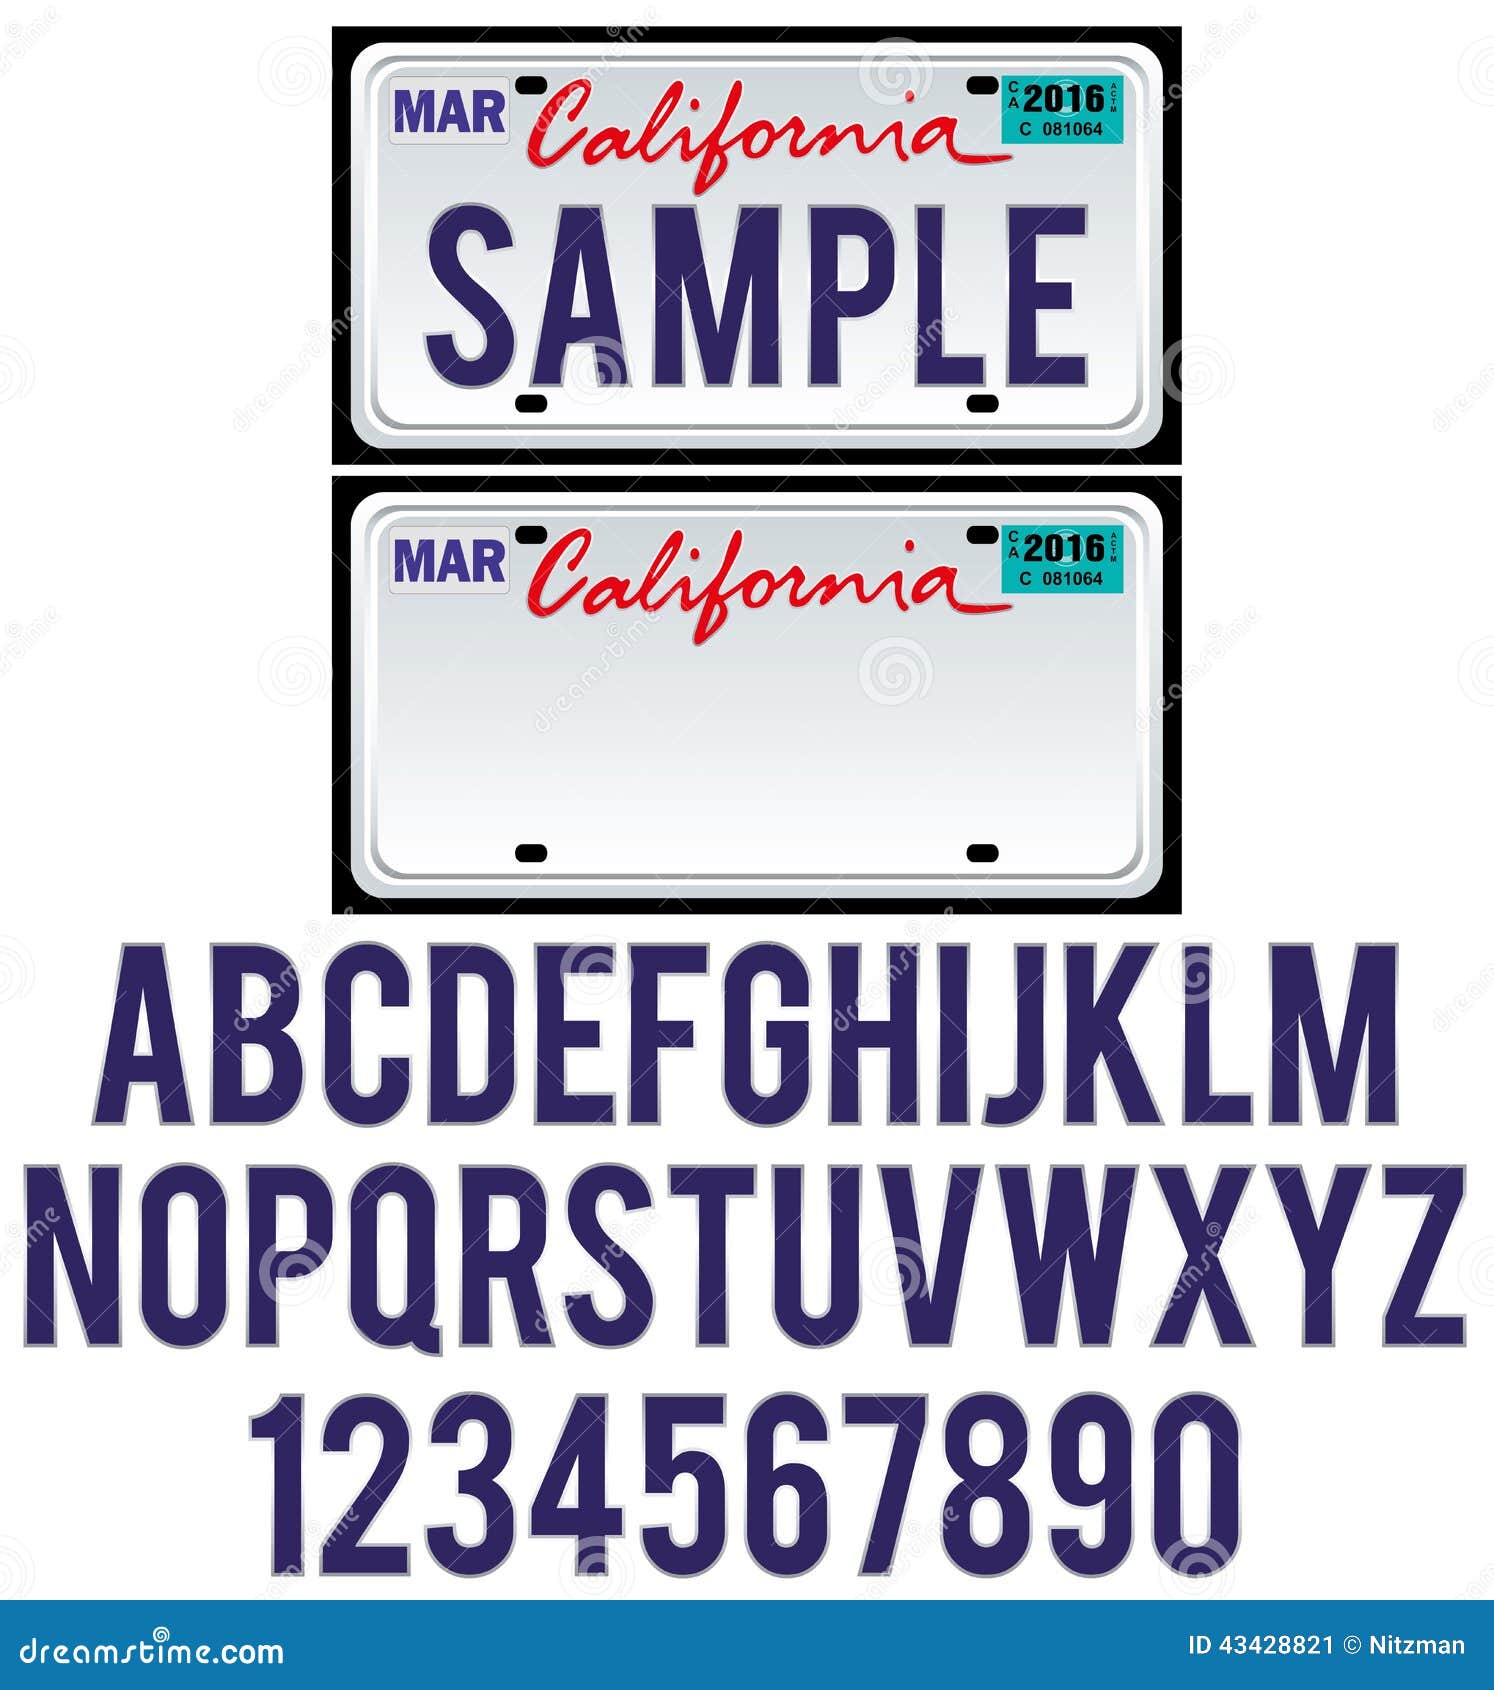 california license plate